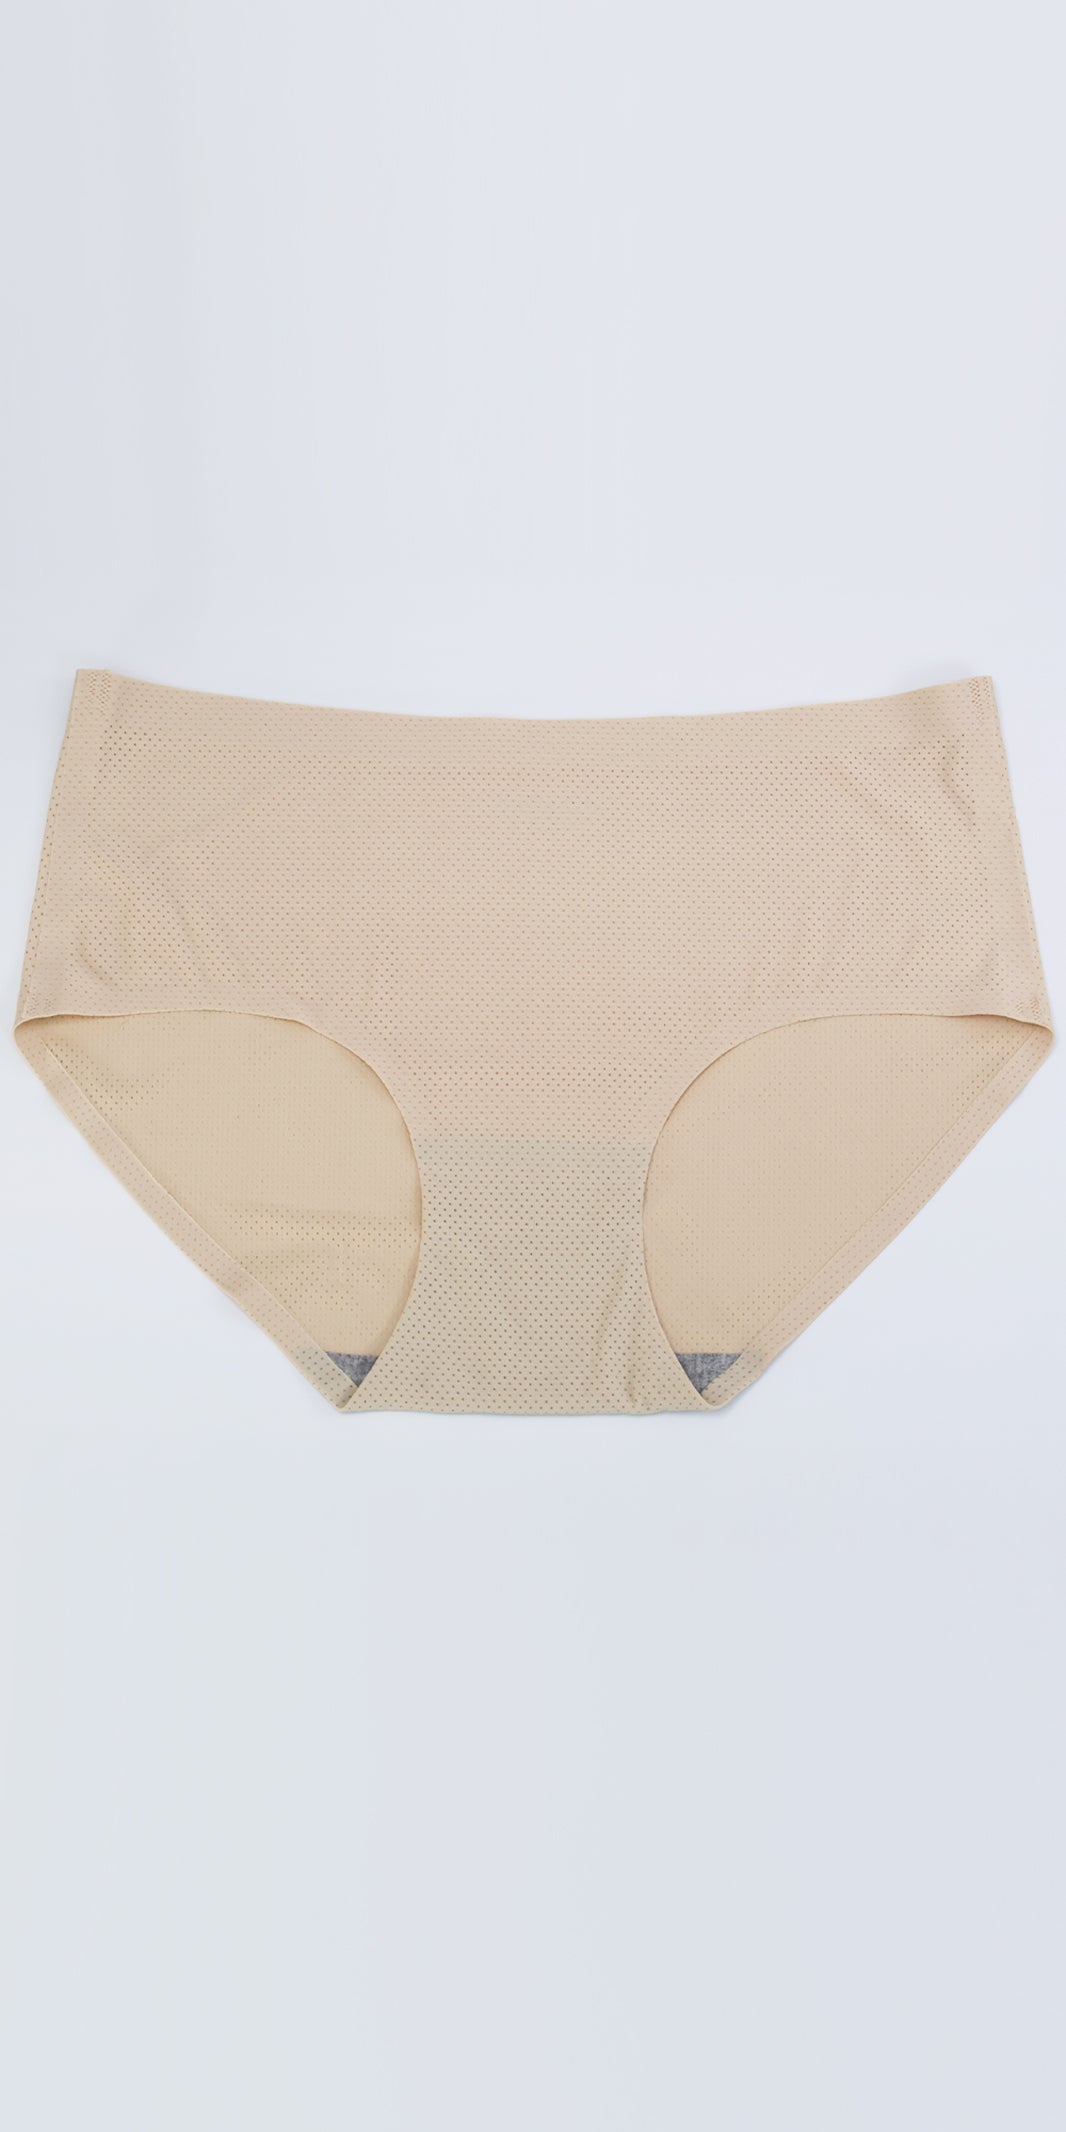 One Piece Seamless Ice Silk Mesh Antibacterial Cotton Crotch Panties